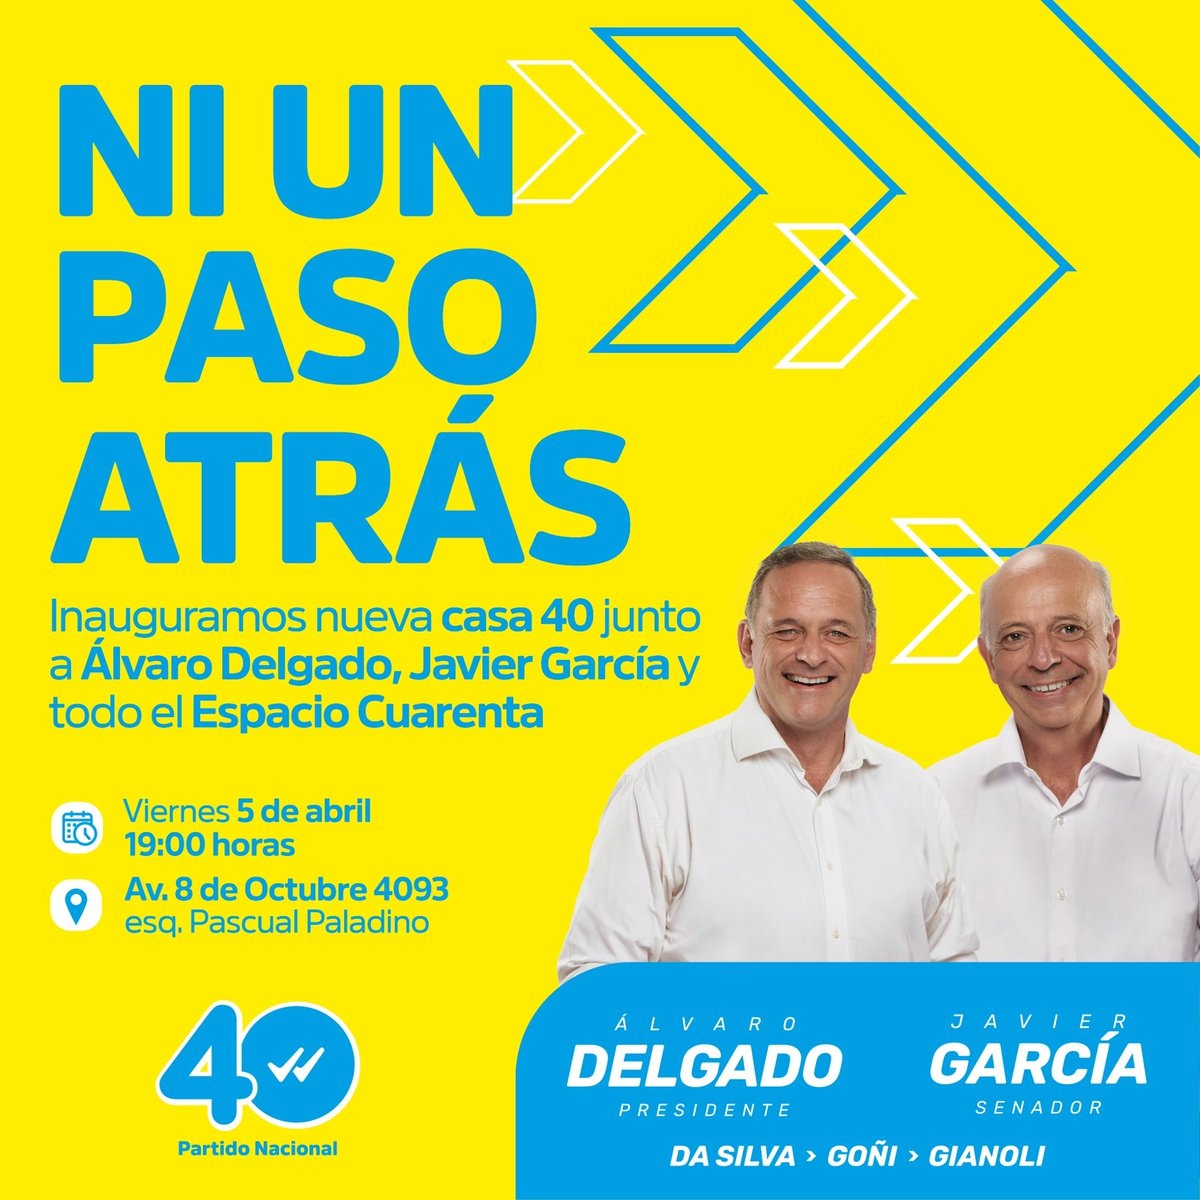 Mañana a las 19:00 hrs inauguramos una nueva #Casa40 junto a @JavierGarcia_Uy y @AlvaroDelgadoUy #NiUnPasoAtras